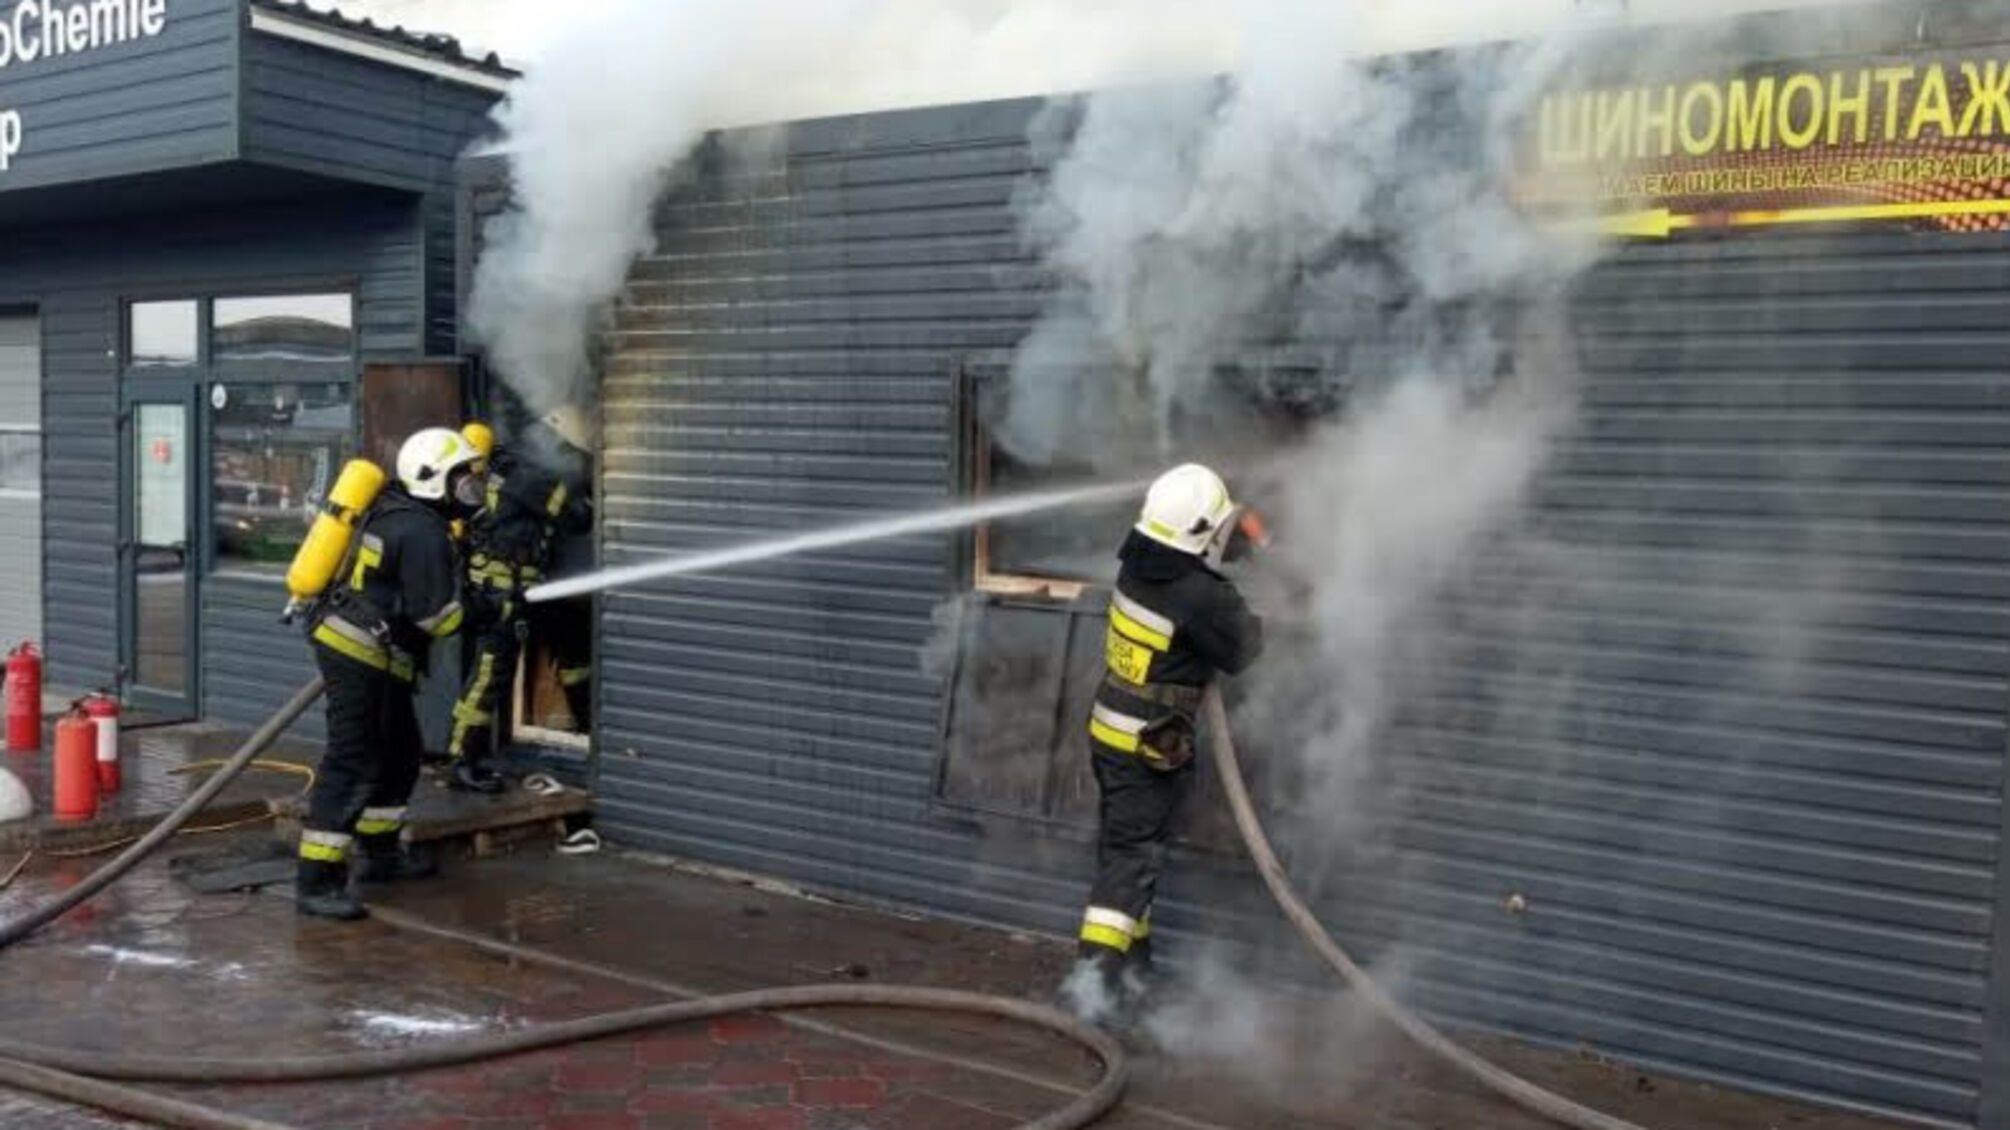 Херсонські рятувальники ліквідували загорання у господарчій споруді на території обслуговування автомобілів